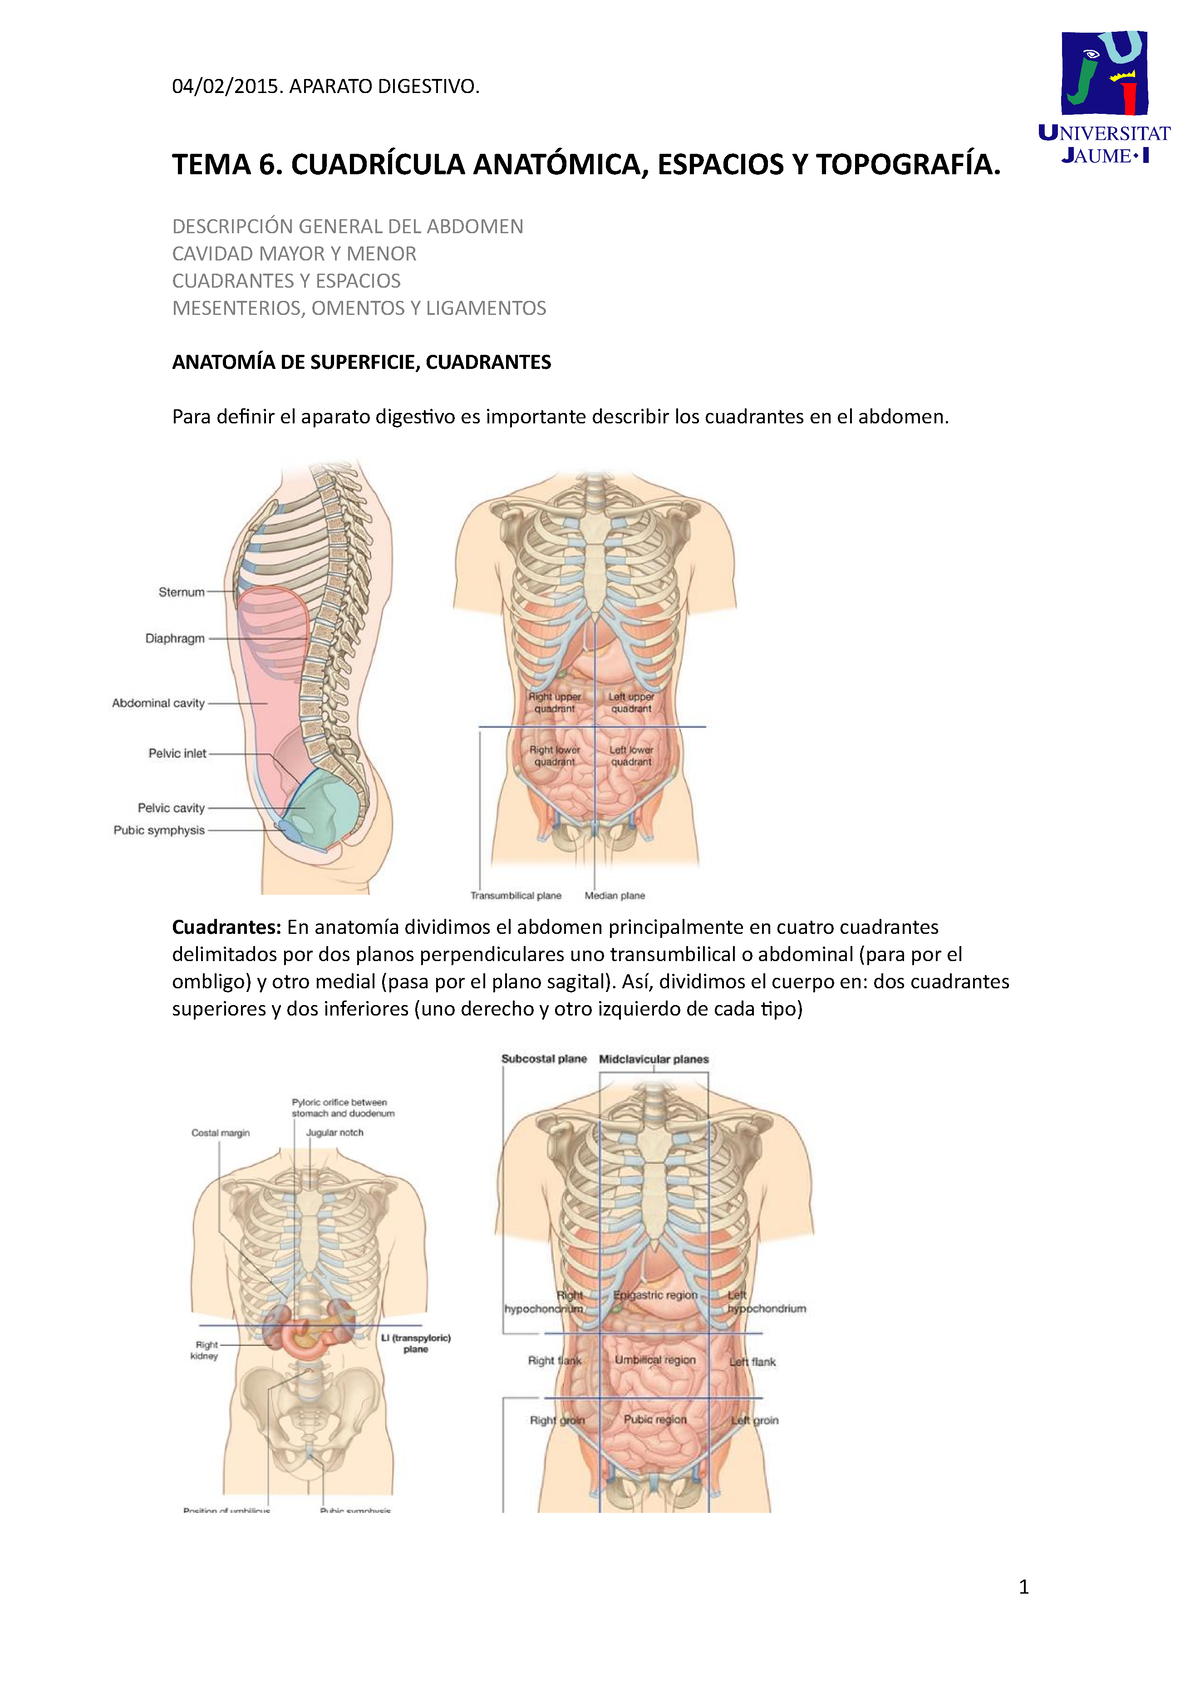 Dr. César Cuadros - La marcación abdominal es una cirugía que realizo  apoyada de la tecnología Vaser para dar más definición al abdomen simulando  las estructuras abdominales. La persona ideal para hacerse